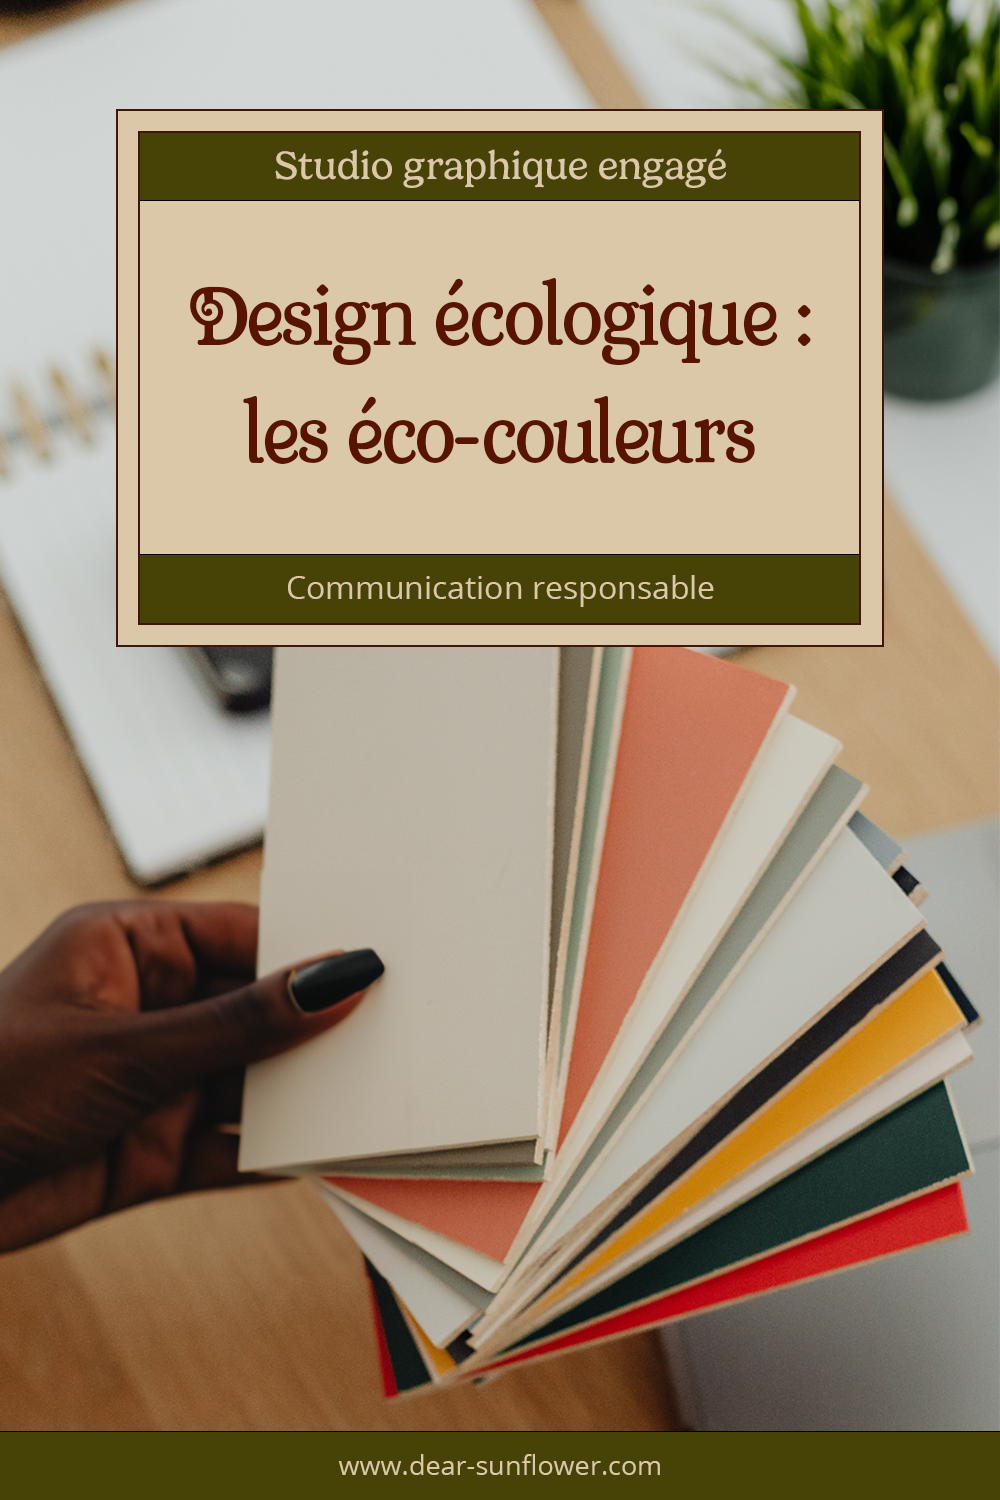 Image de couverture de l'article de blog "Design écologique : une communication responsable avec les éco-couleur", une main de femme noire de peau tient un nuancier de couleurs papier